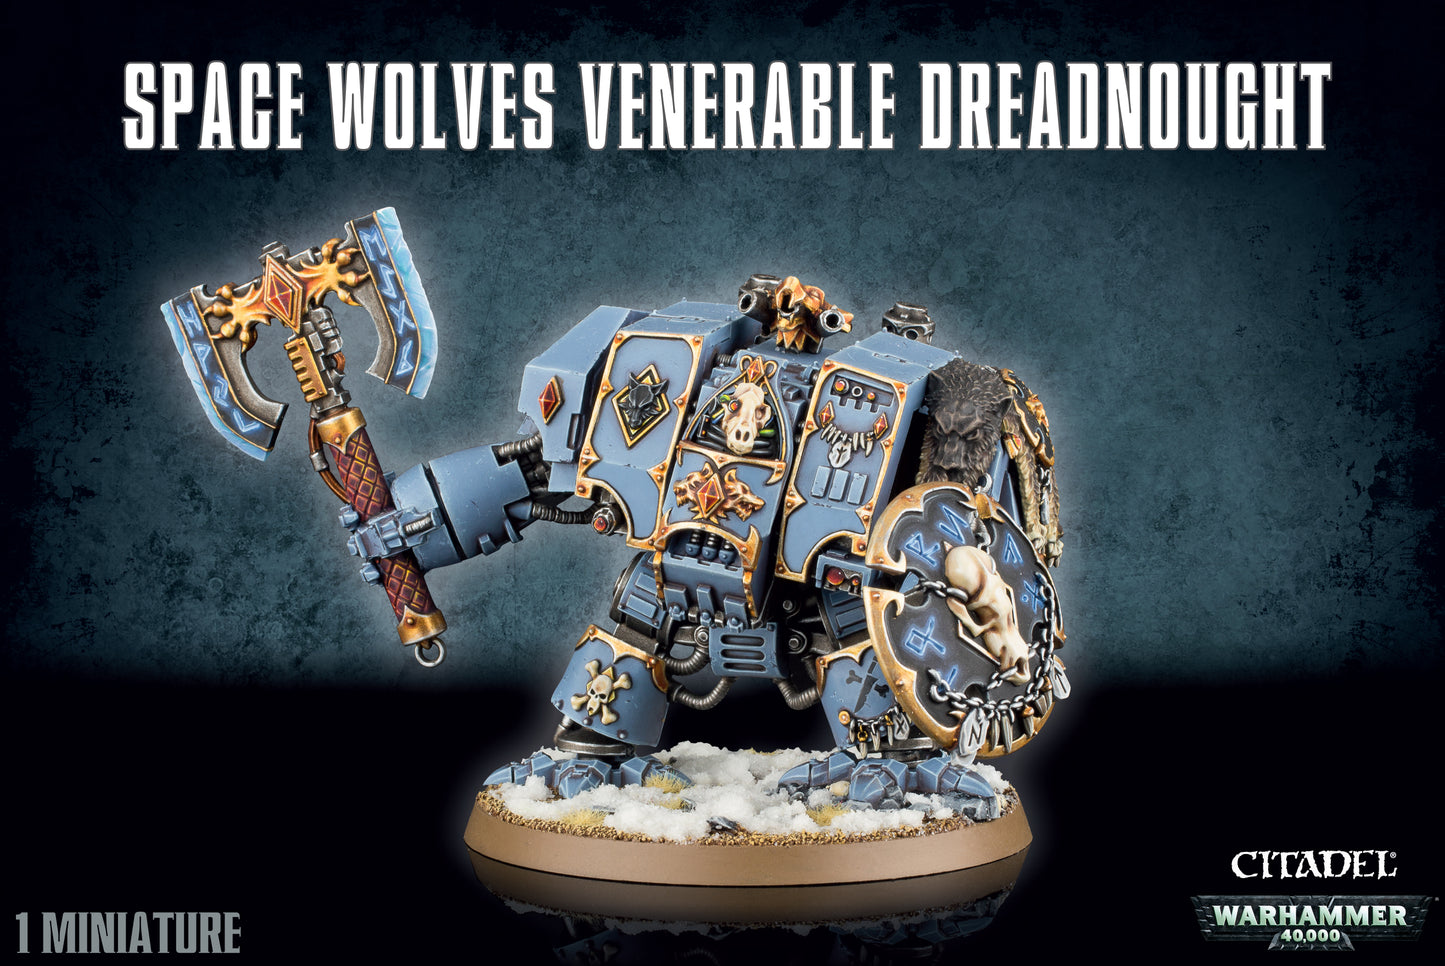 Dreadnought Venerable de los Lobos Espaciales / Space Wolves Venerable Dreadnought